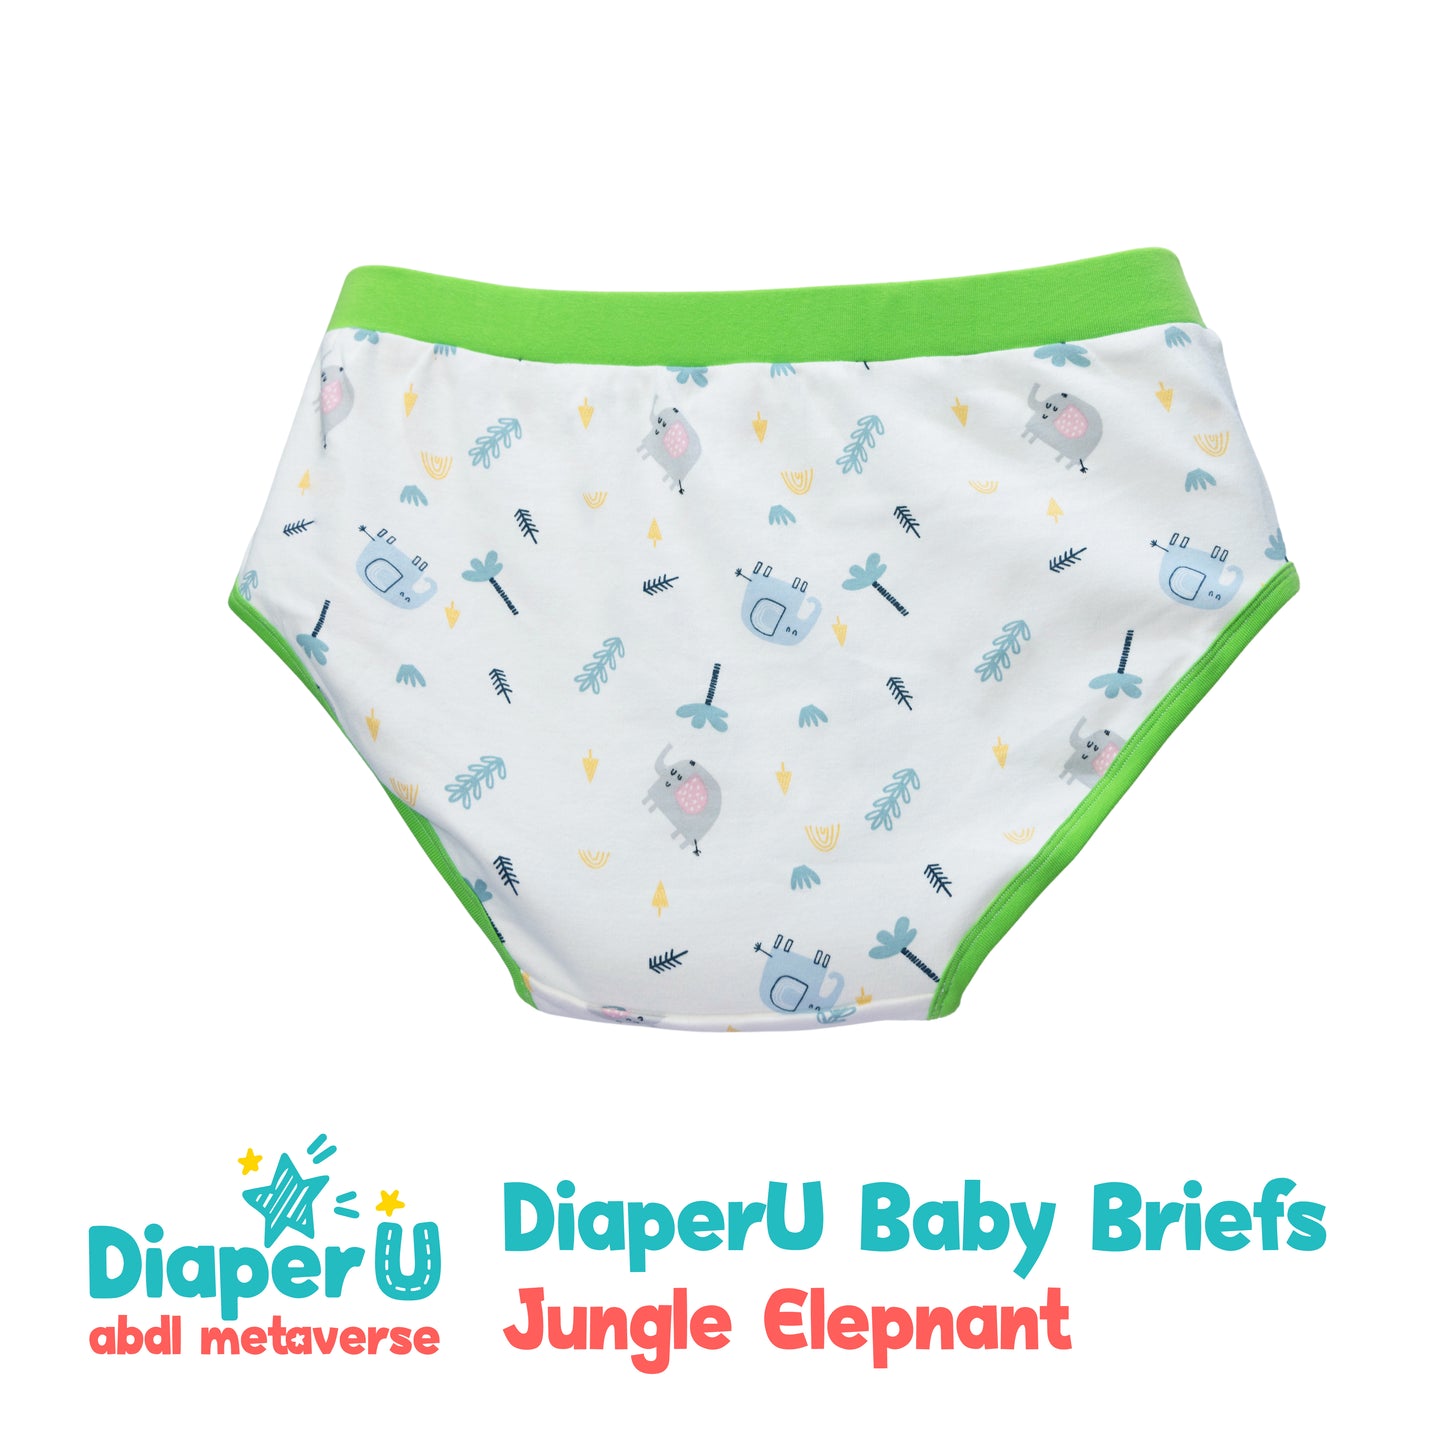 ABDL Cotton Baby Briefs - Jungle Elephant (Unisex)